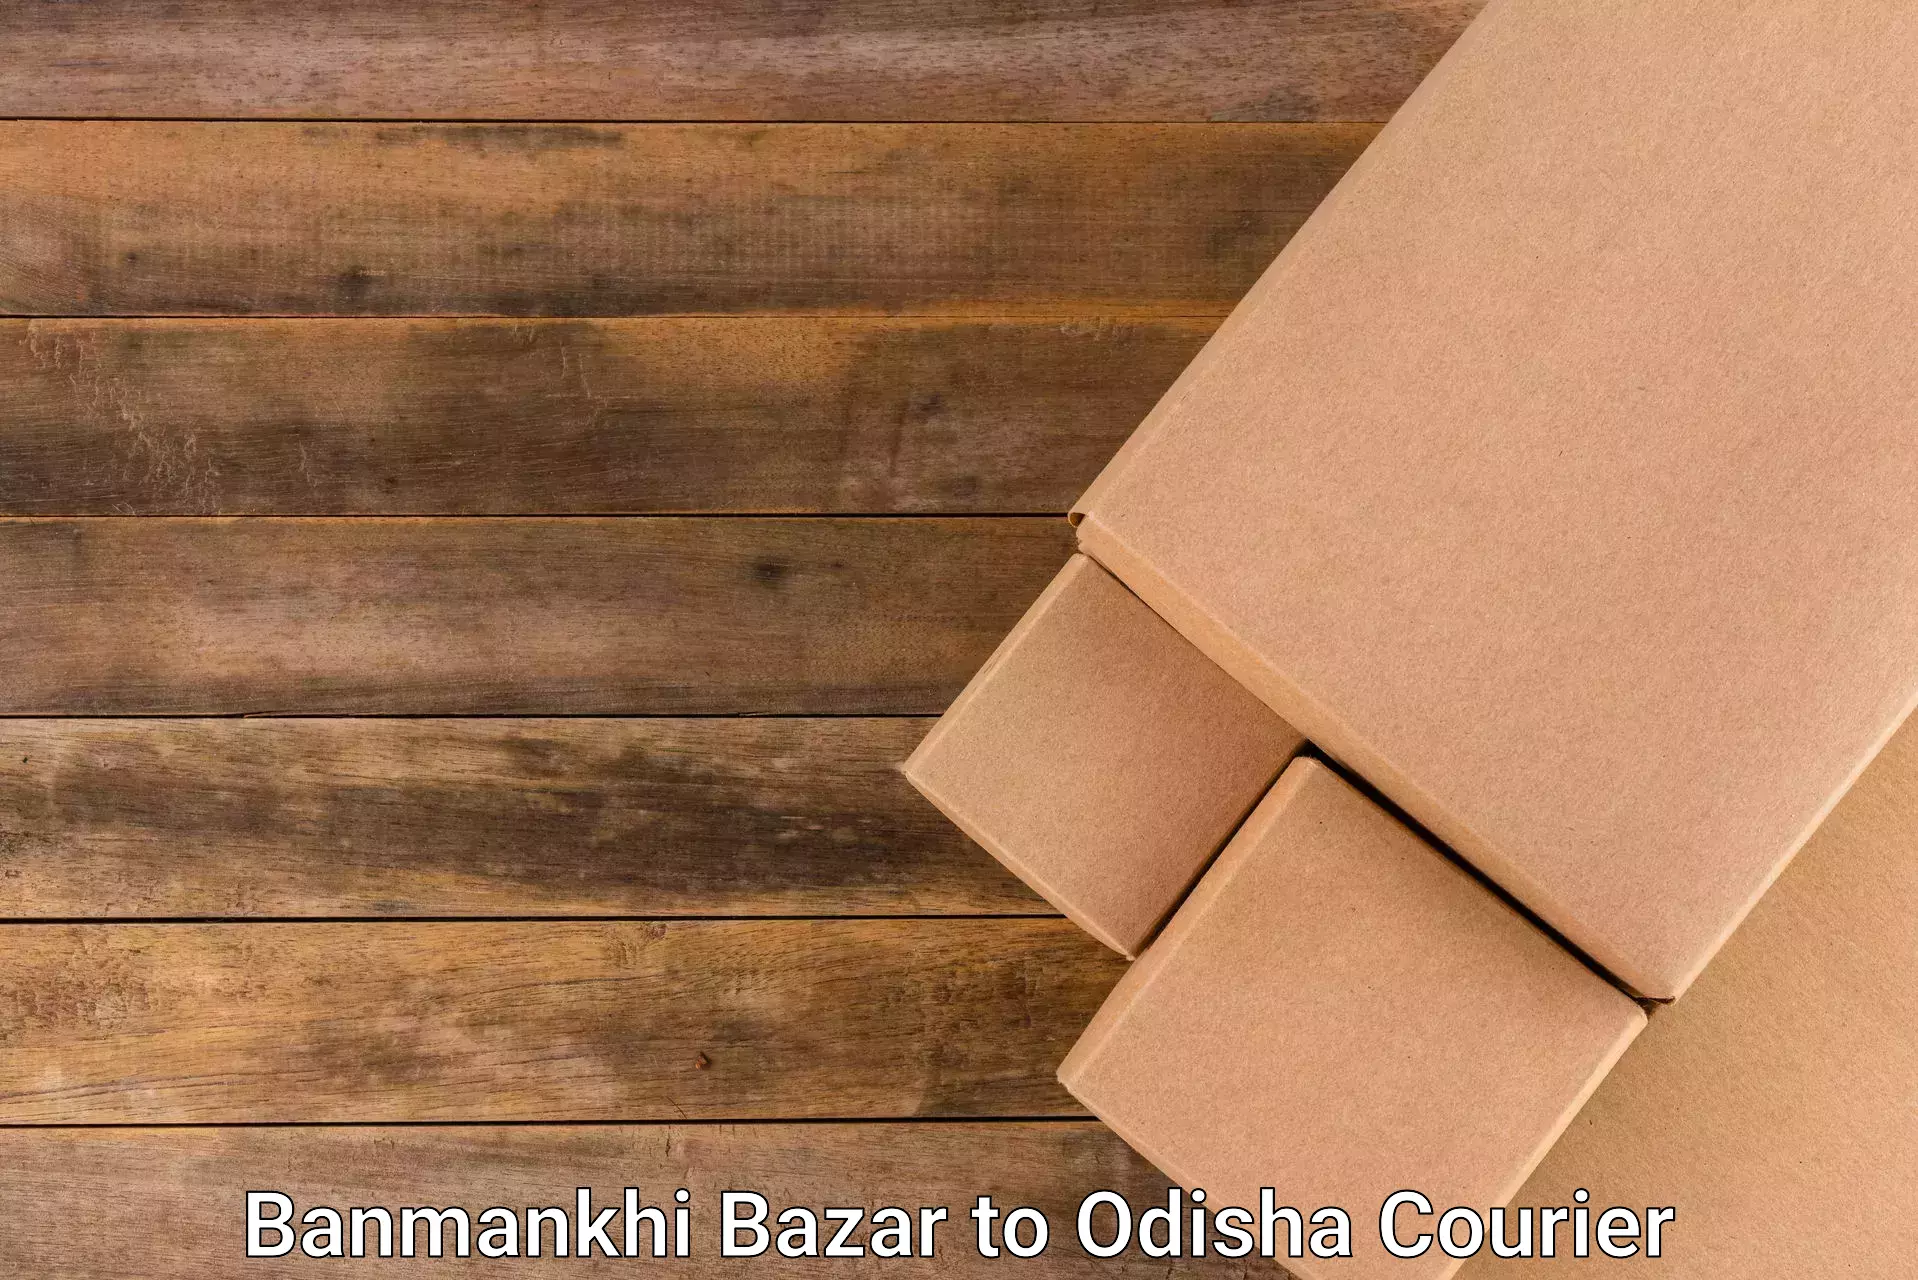 Affordable parcel service Banmankhi Bazar to Ukhunda